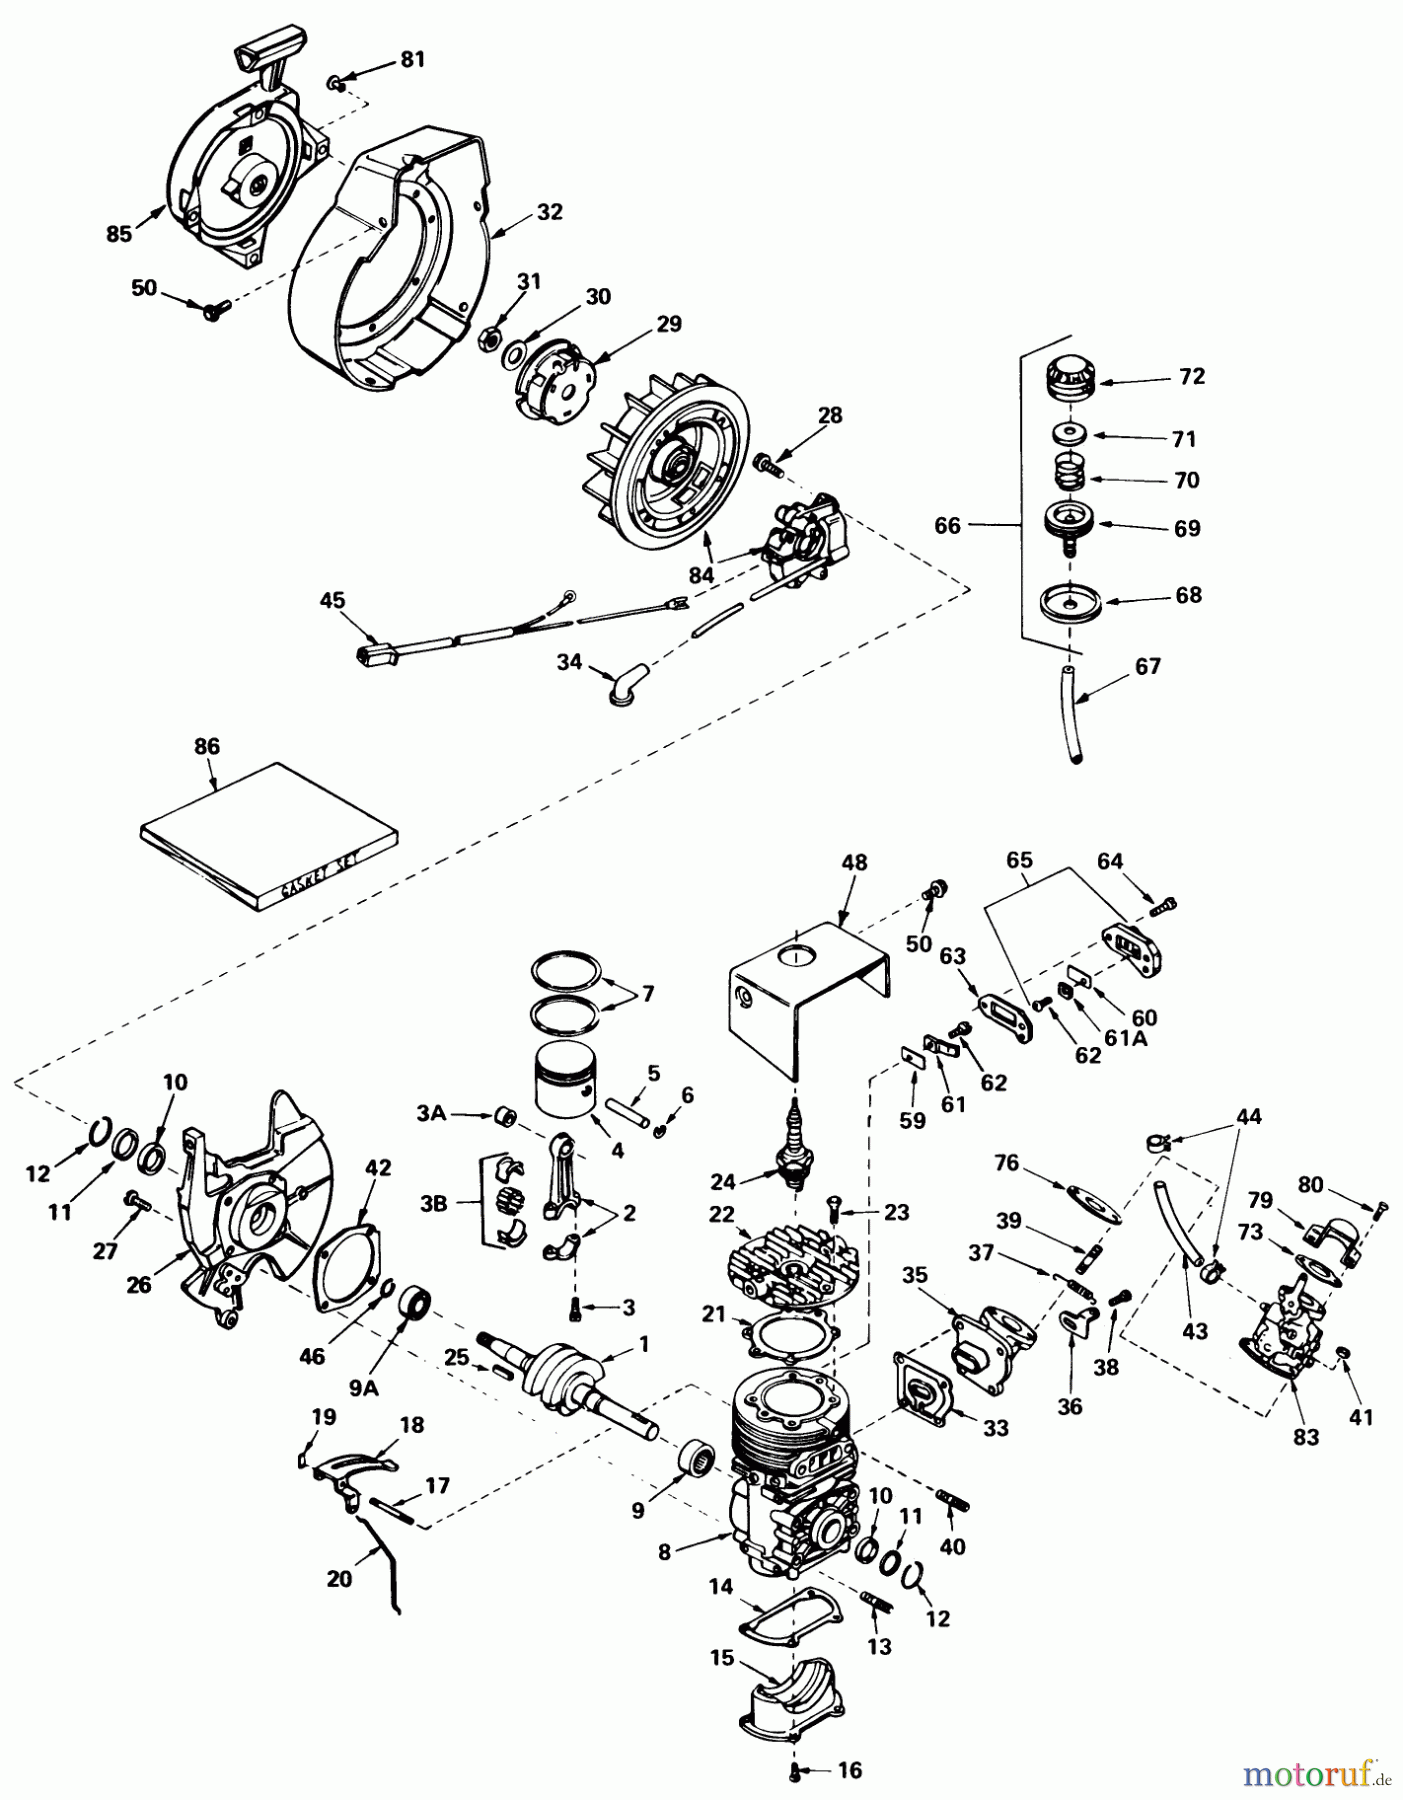  Toro Neu Snow Blowers/Snow Throwers Seite 1 38120 (S-200) - Toro S-200 Snowthrower, 1980 (0000001-0015000) ENGINE ASSEMBLY (ENGINE TECUMSEH MODEL NO. AH520 TYPE 1585)